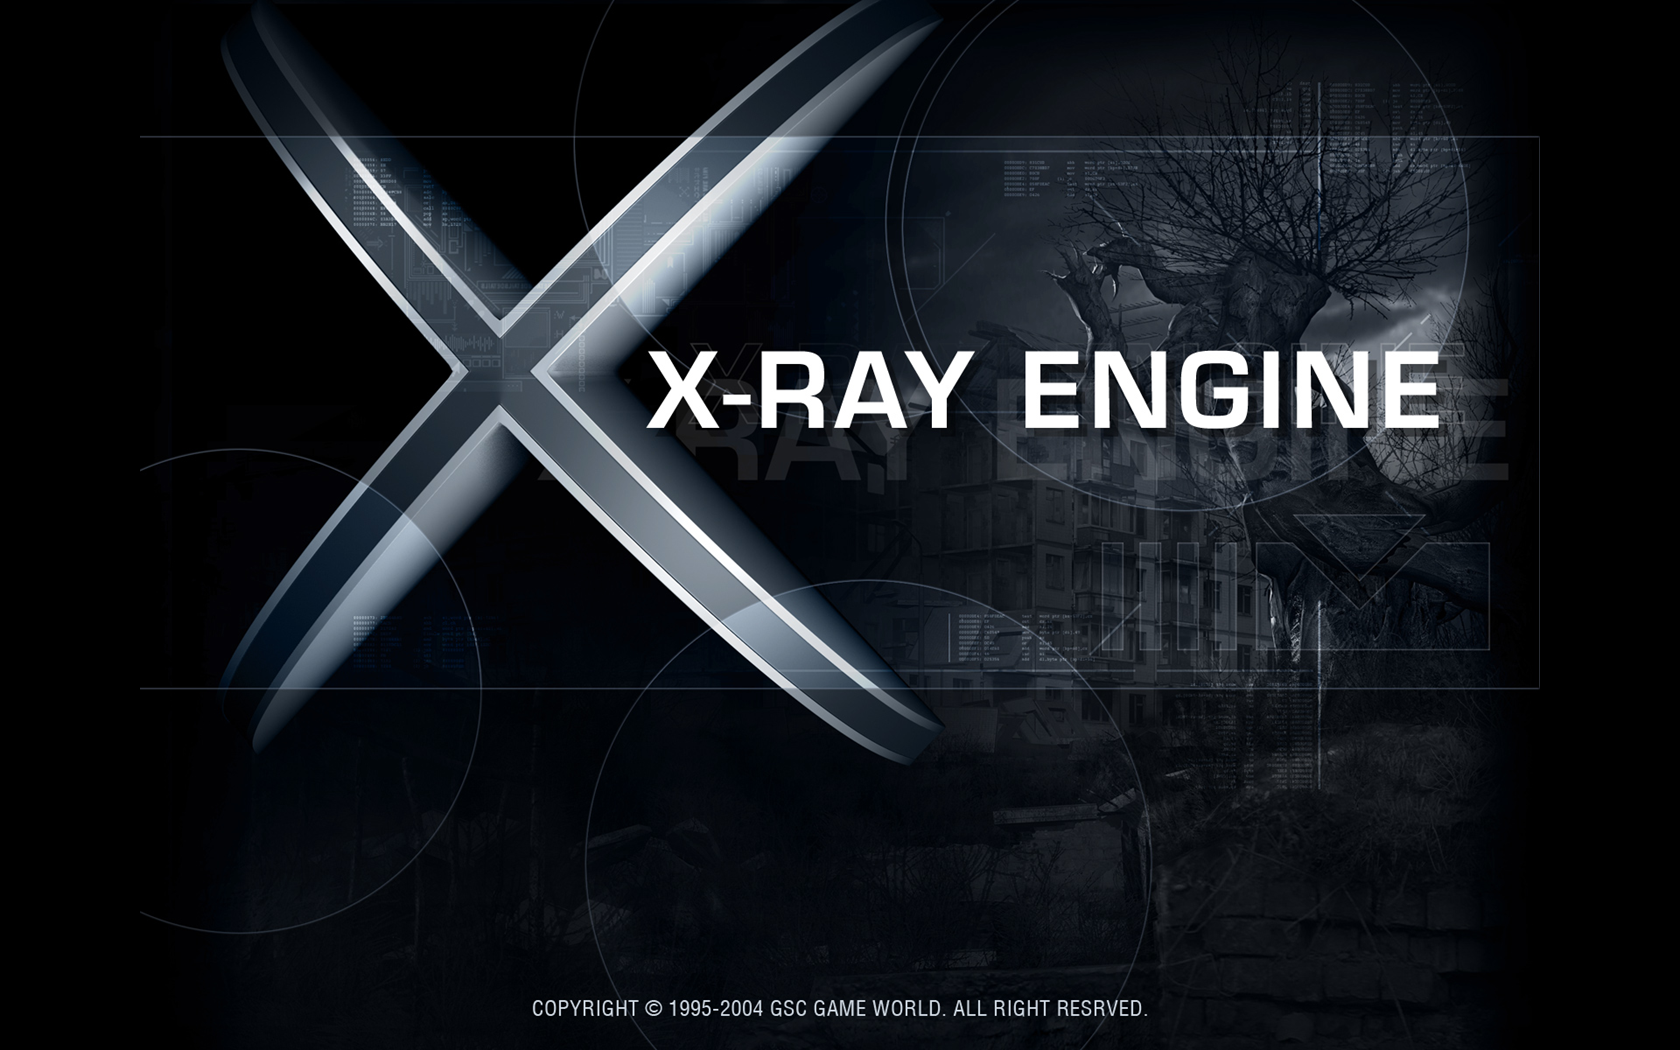 X ray games. X-ray движок. Игровой движок x ray сталкер. X ray движок сталкер. Логотип XRAY engine.